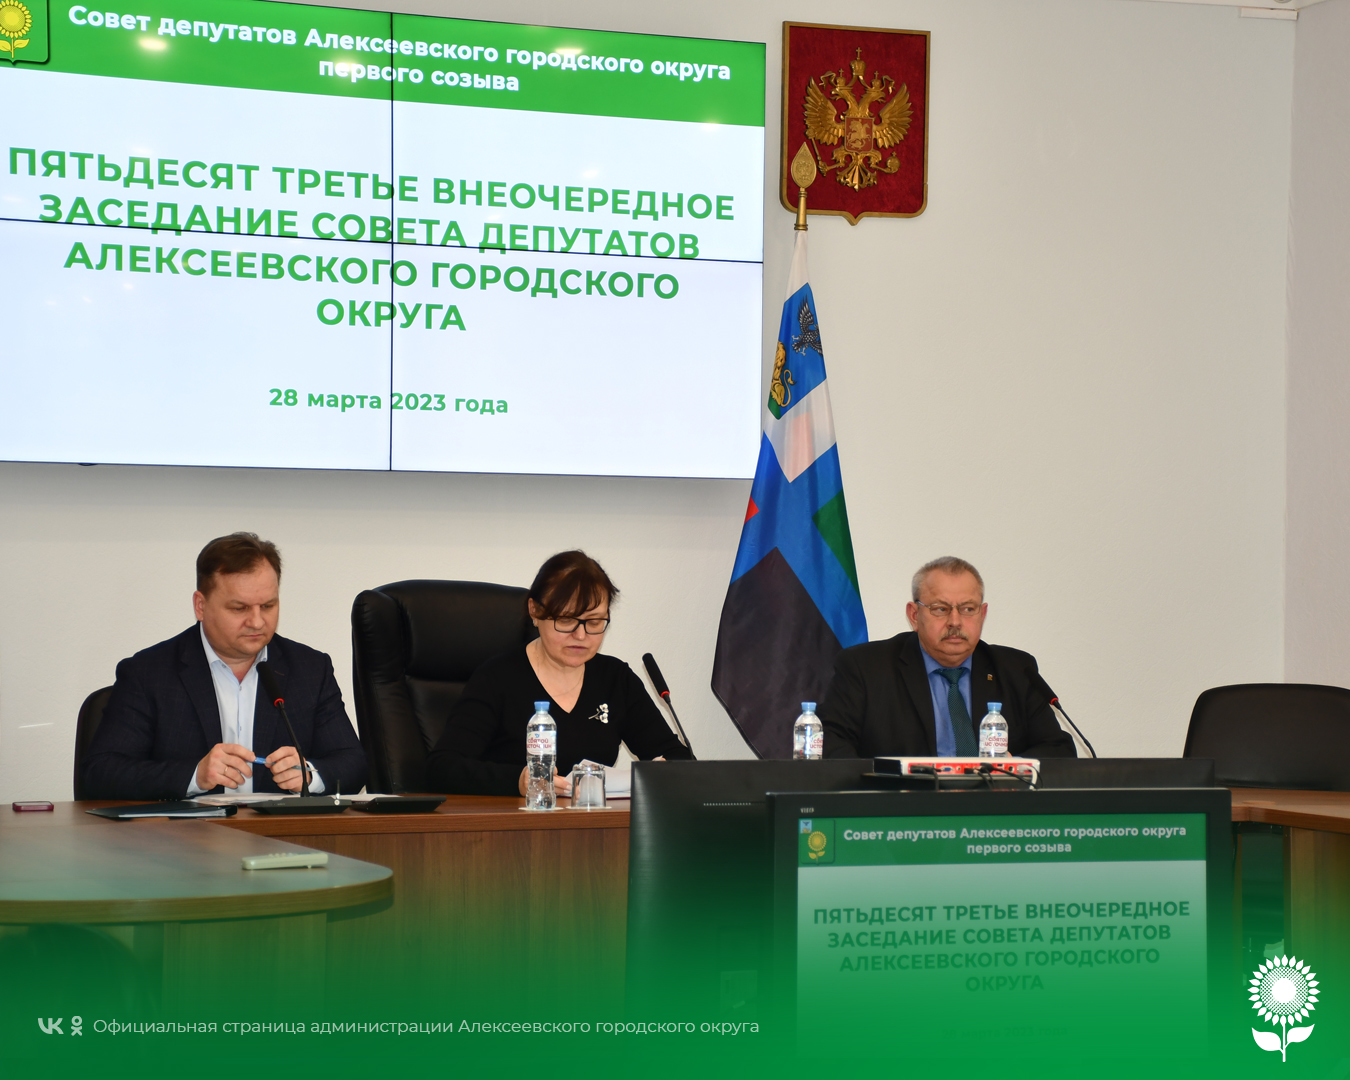 В Алексеевке состоялось пятьдесят третье внеочередное заседание Совета депутатов.